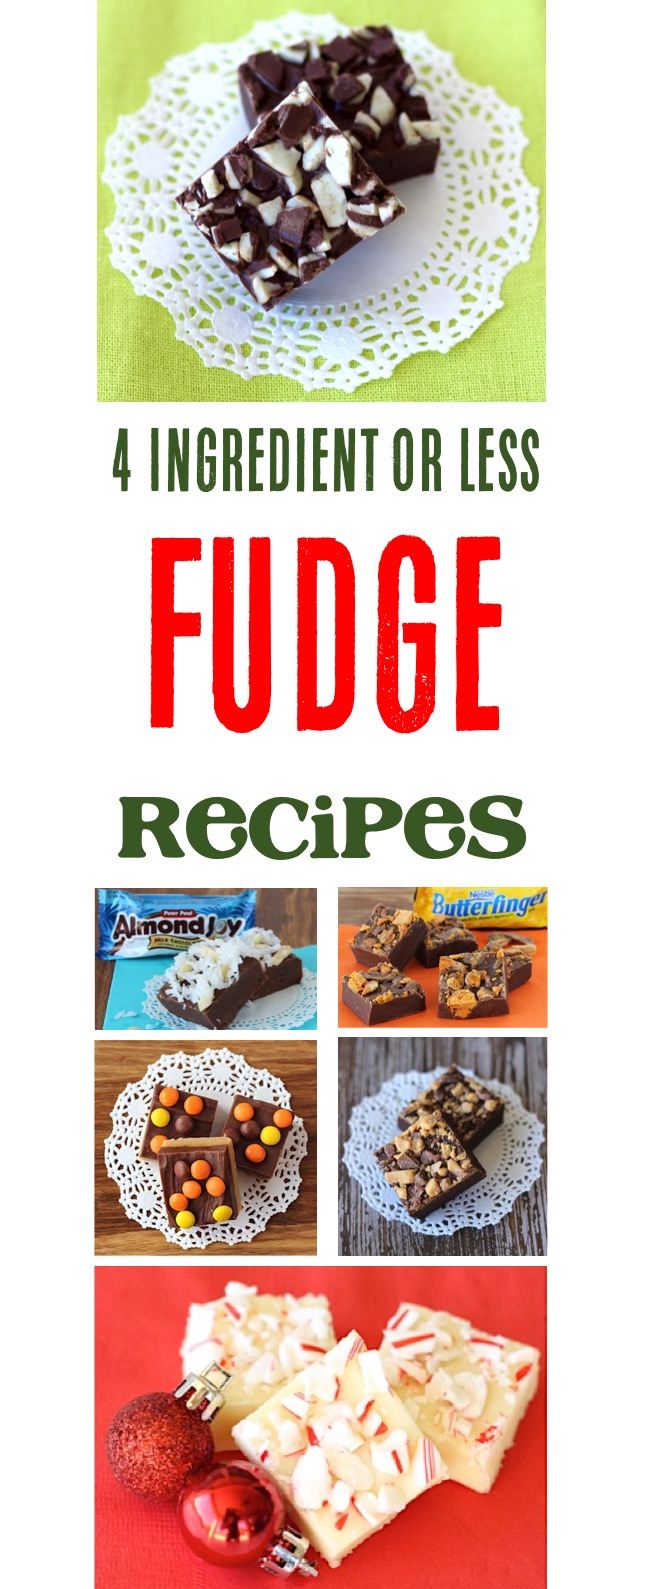 4 Ingredient Fudge Recipes at TheFrugalGirls.com